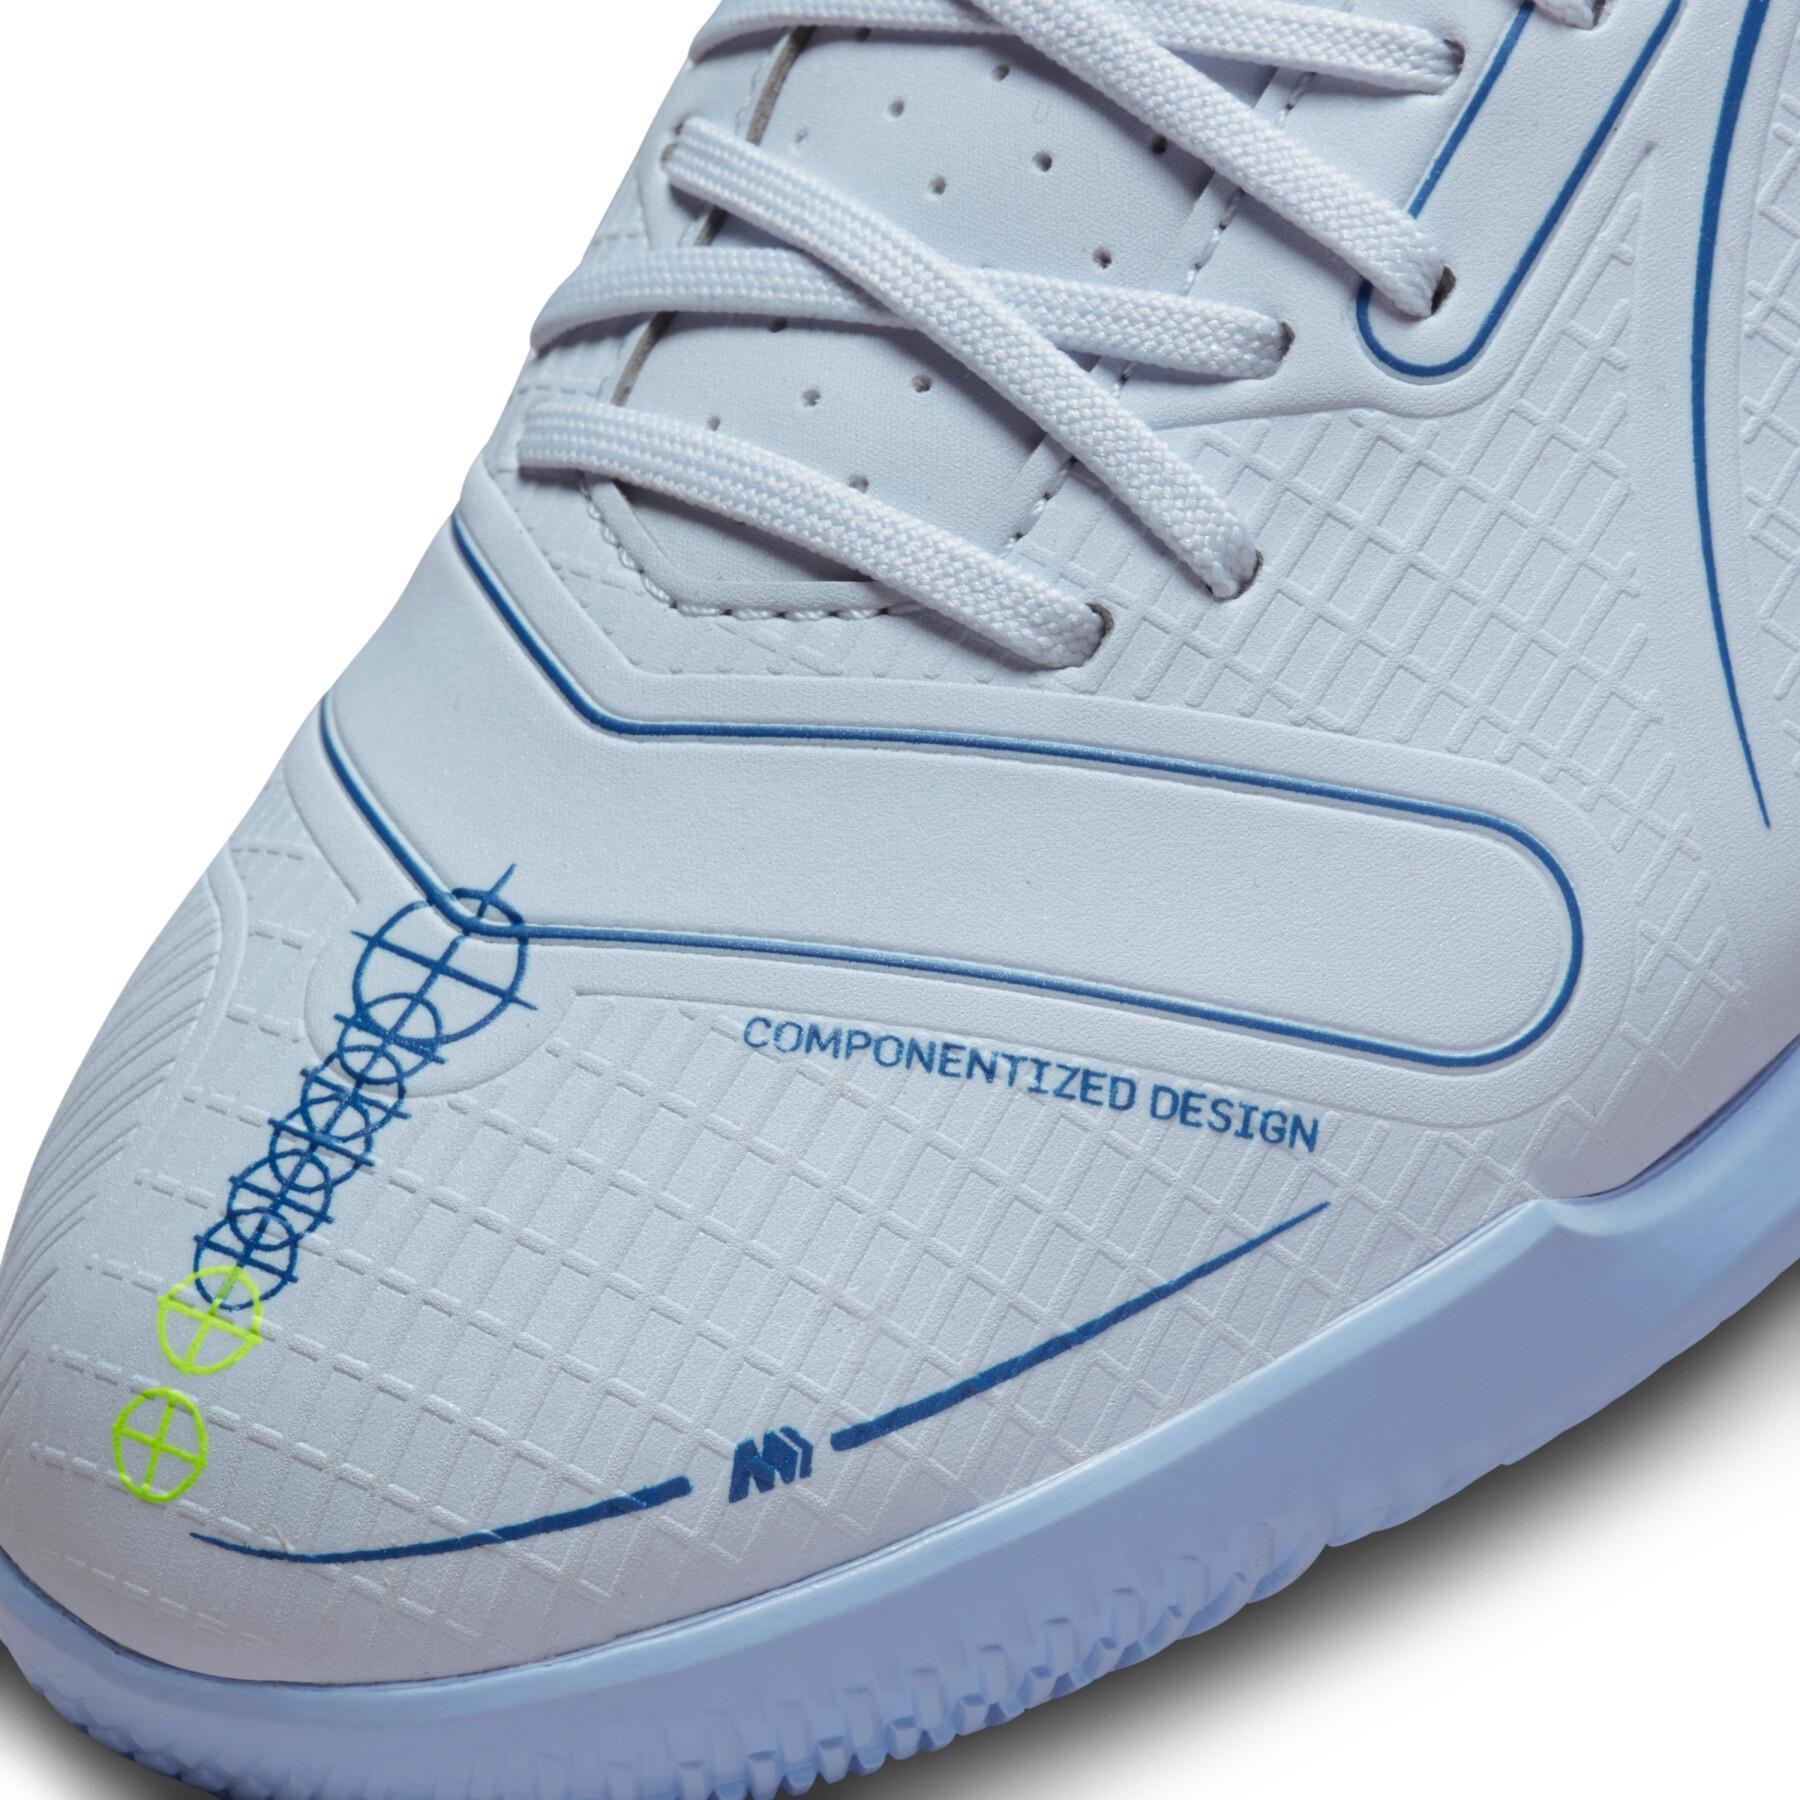 Sapatos de futebol Nike Mercurial Vapor 14 Academy - Progress Pack